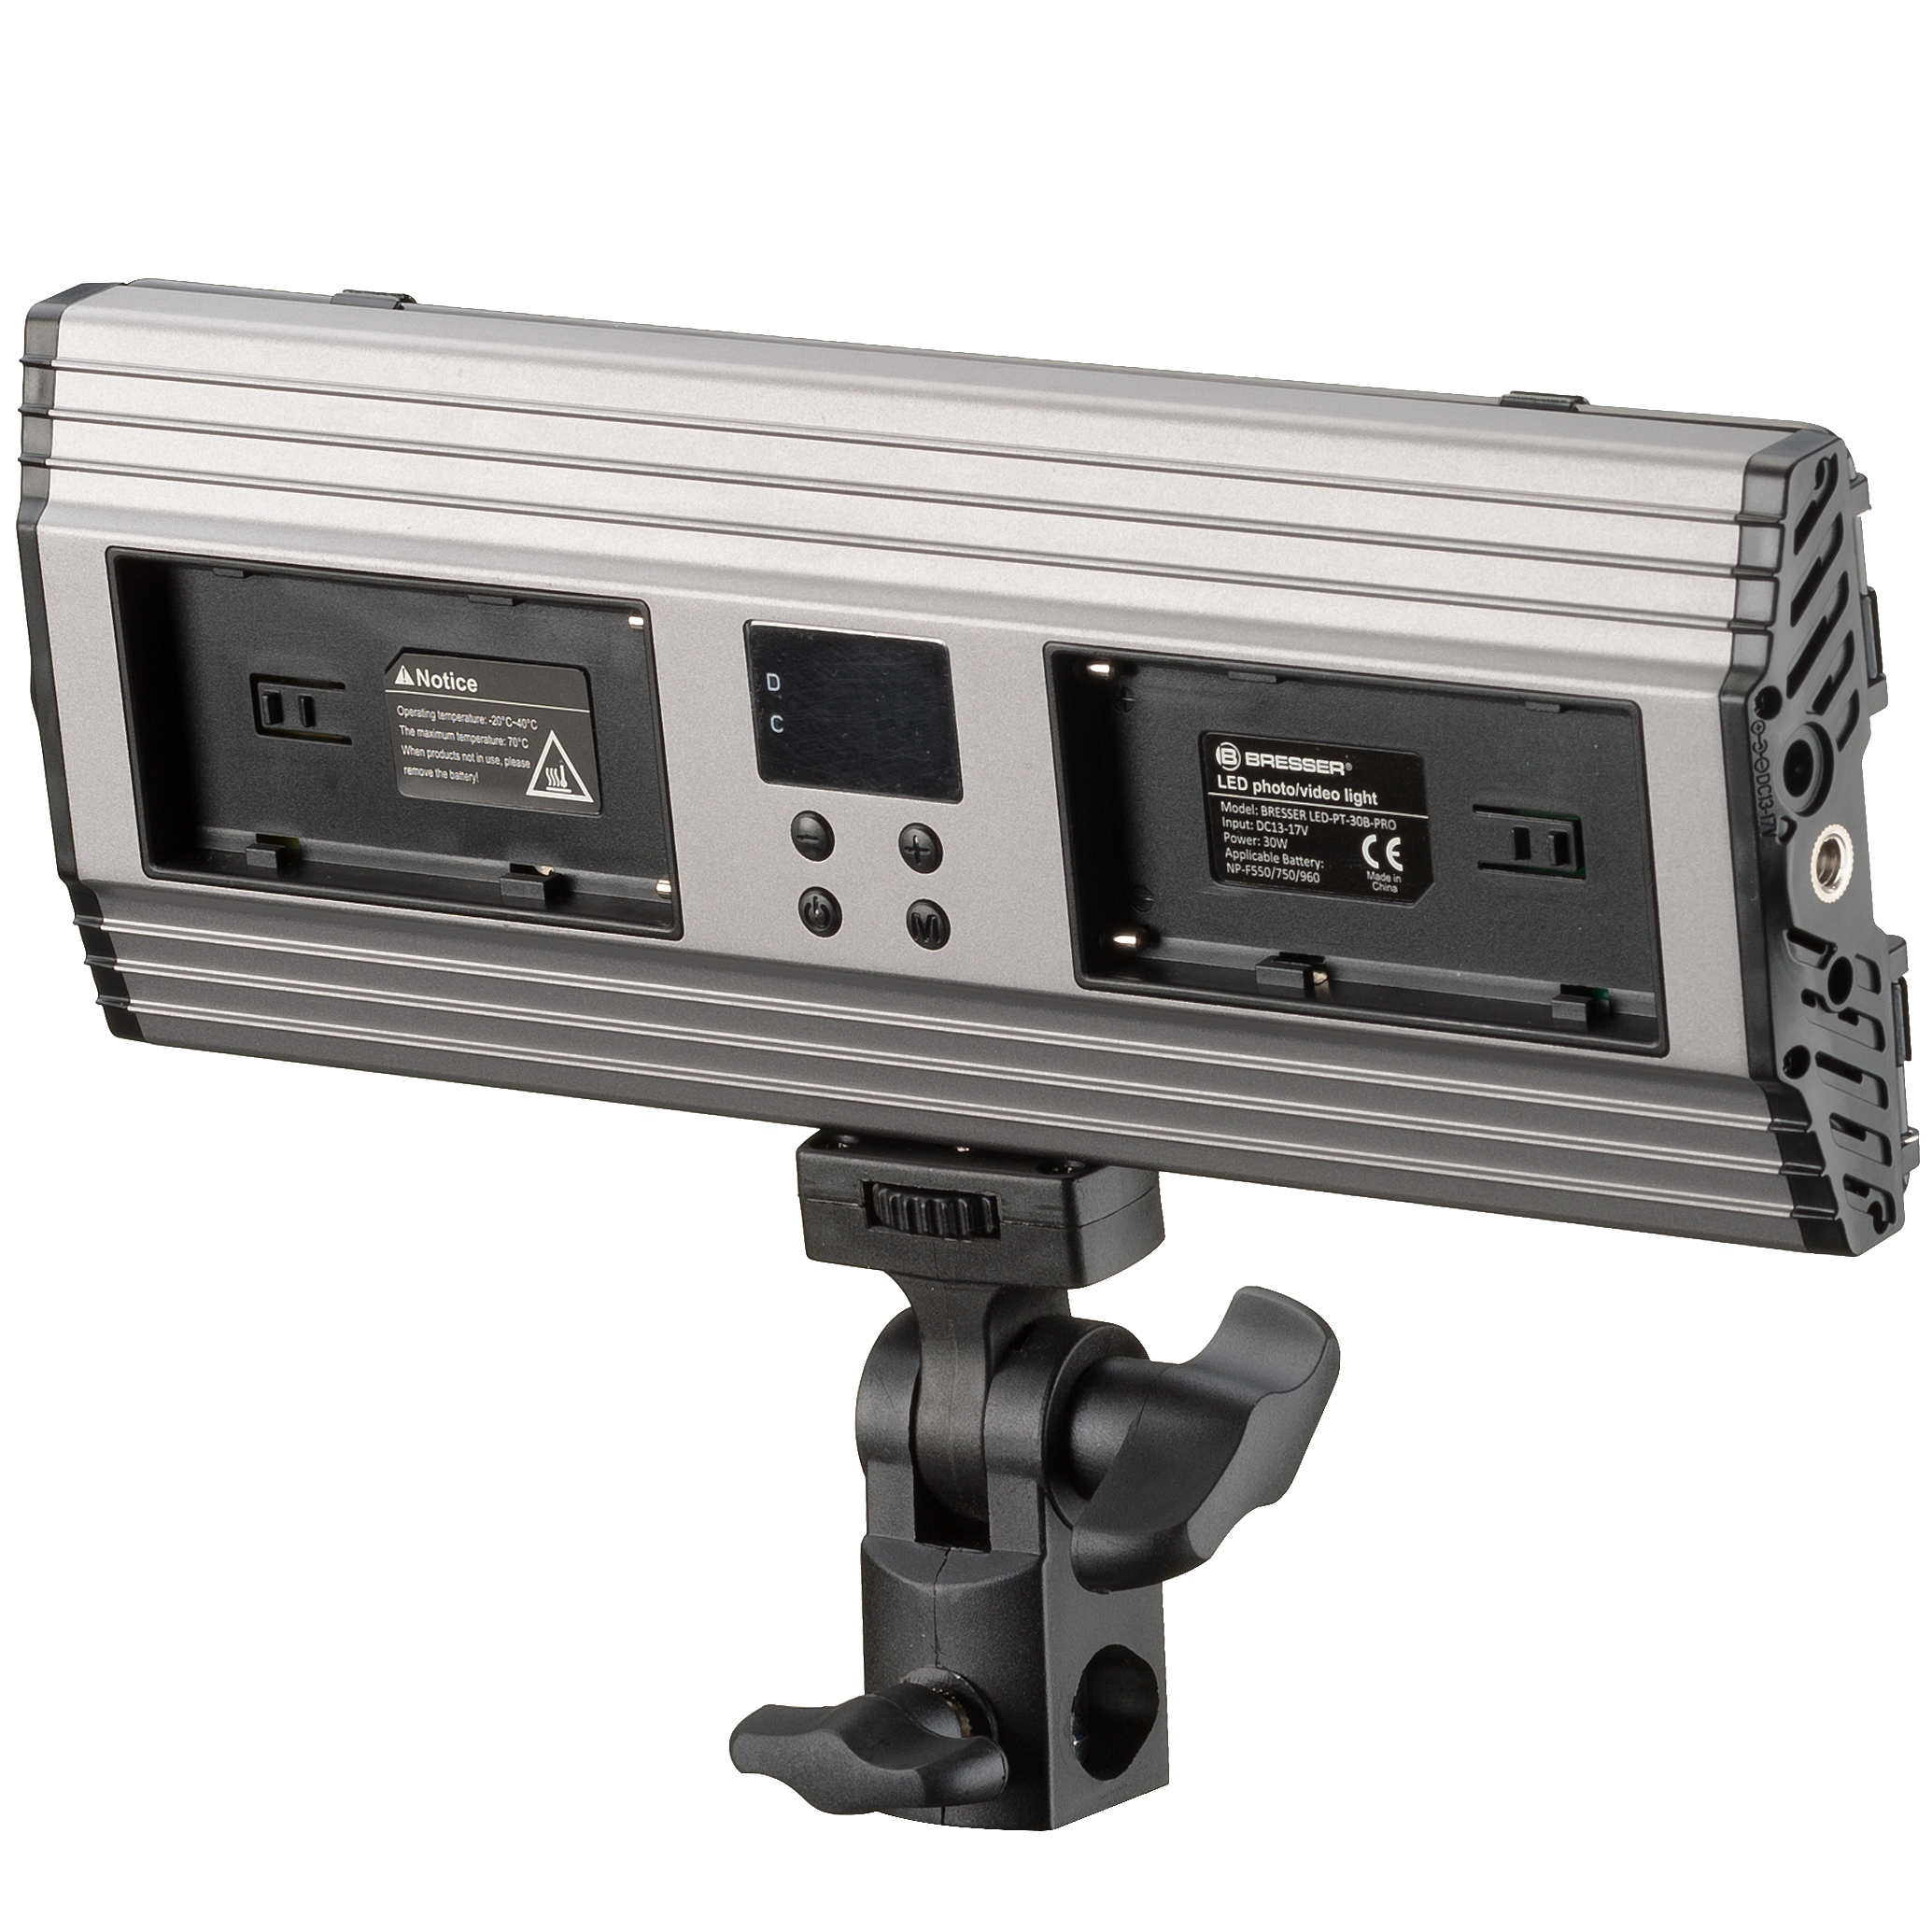 Kit de Lampes Vidéo BRESSER PT 30B-II LED Bi-Color avec Volets coupe-flux, Accumulateurs, Bloc d'Alimentation, Télécommande et Étui